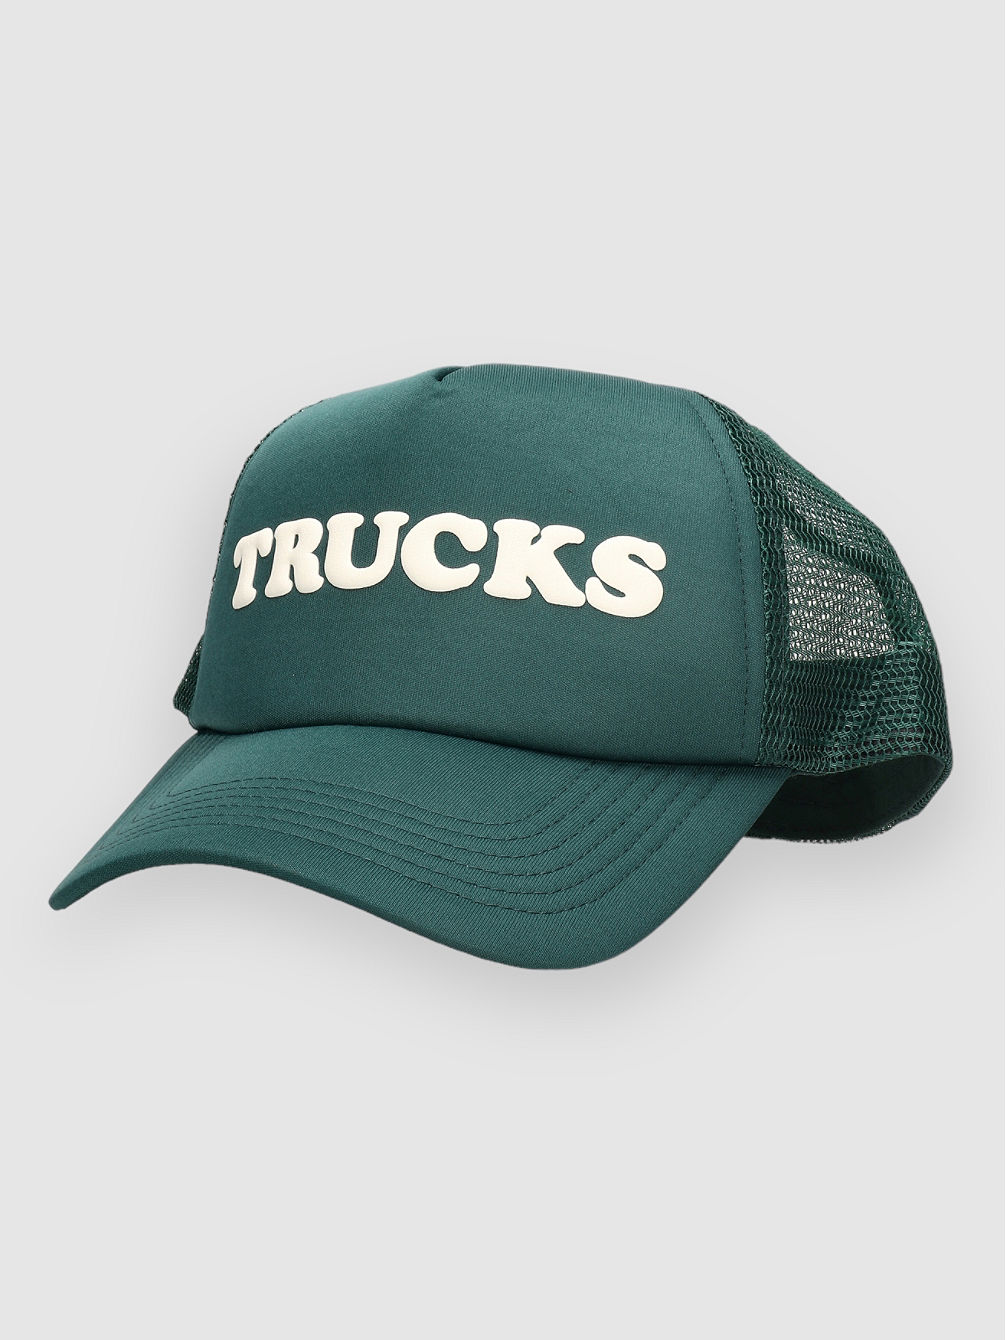 Trucks Trucker Keps